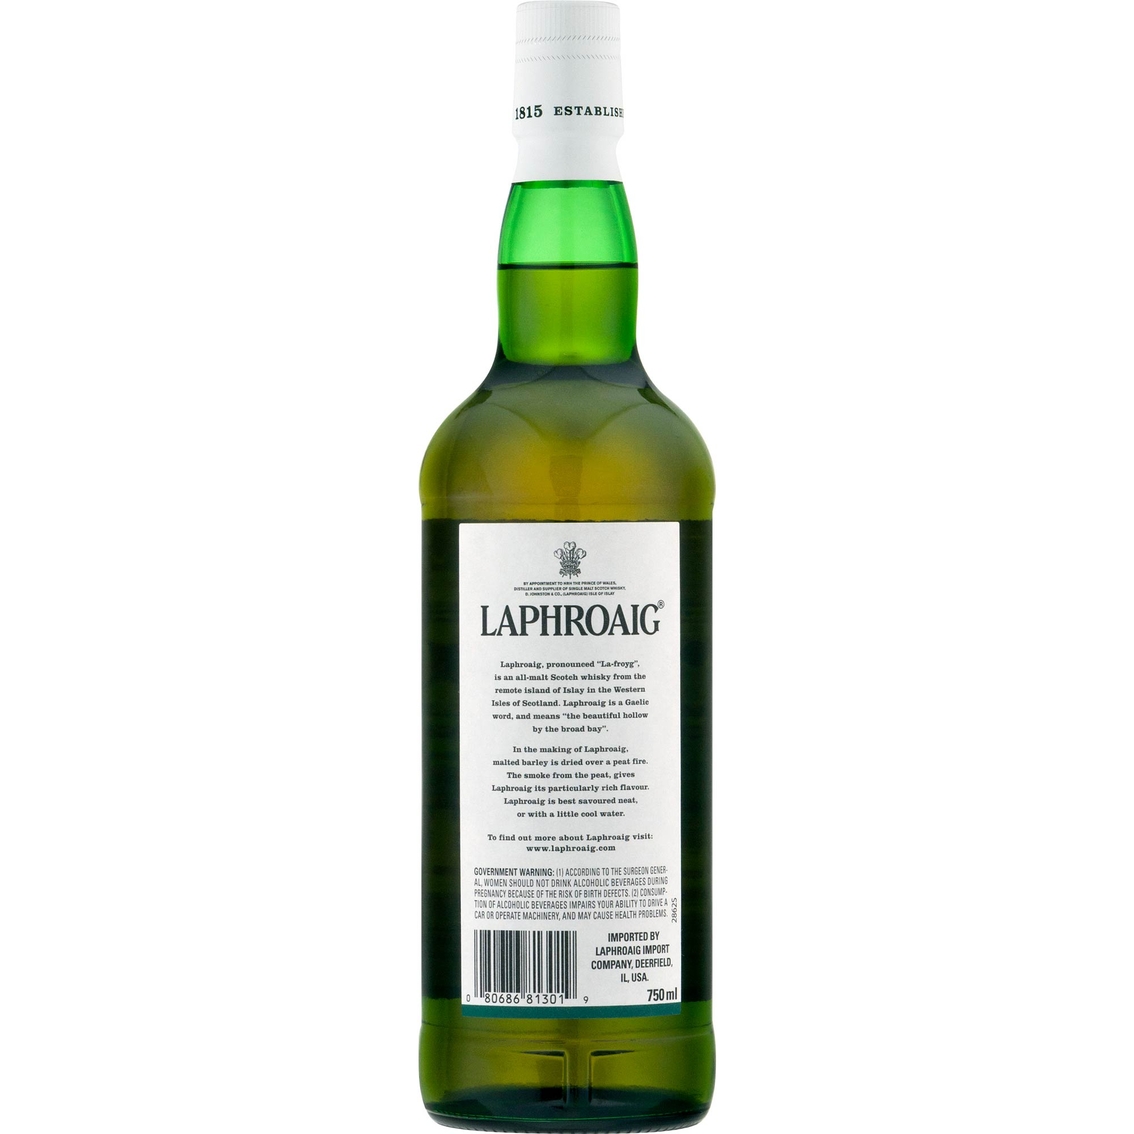 Laphroaig 10 Year Old Scotch Whisky 750ml - Image 2 of 2